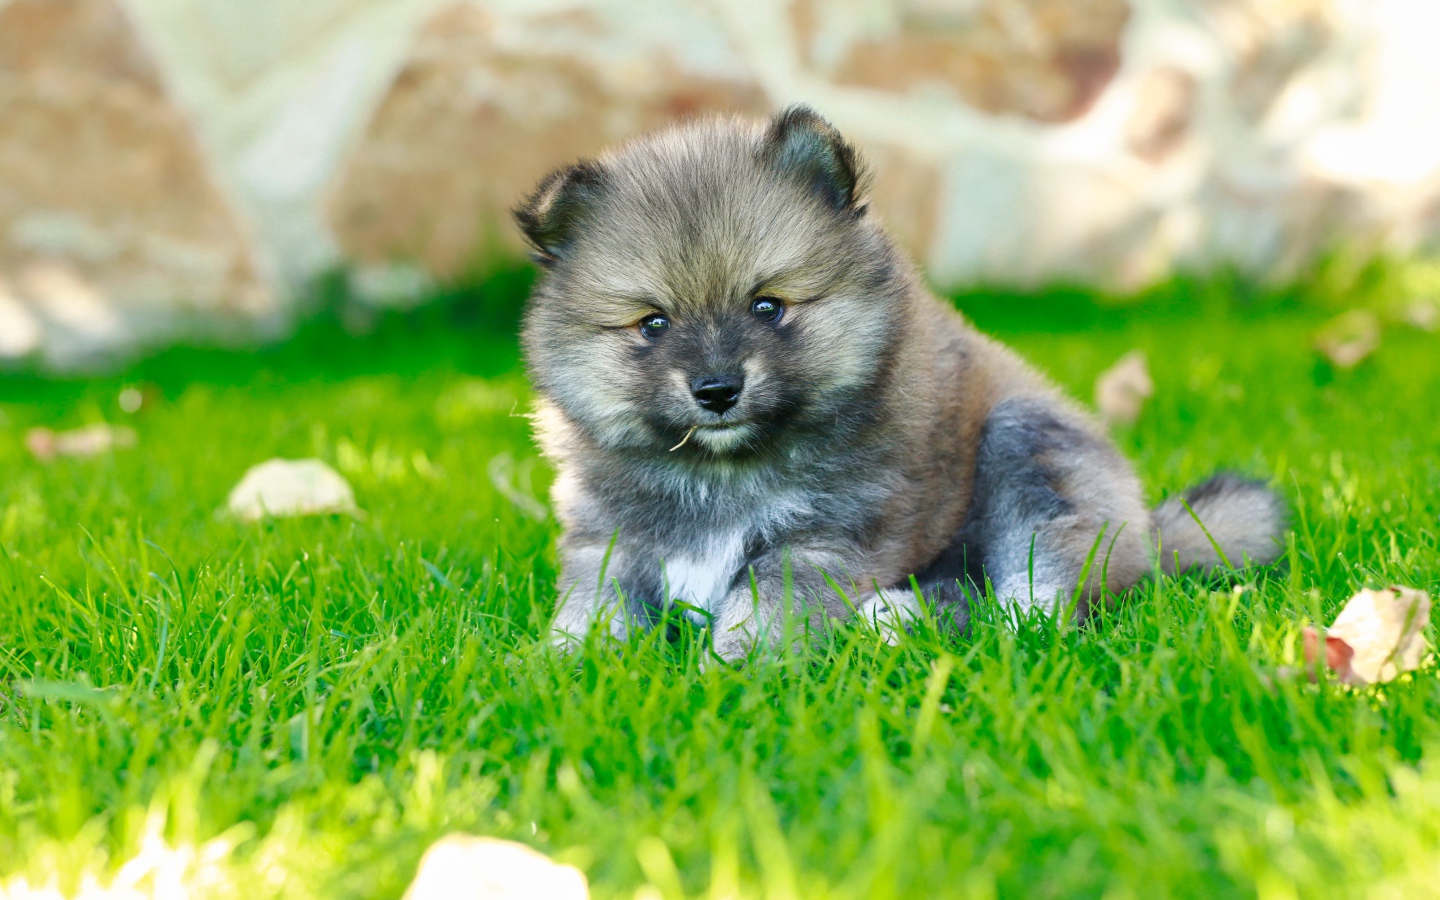 Маленький щенок померанского шпица на зеленой траве